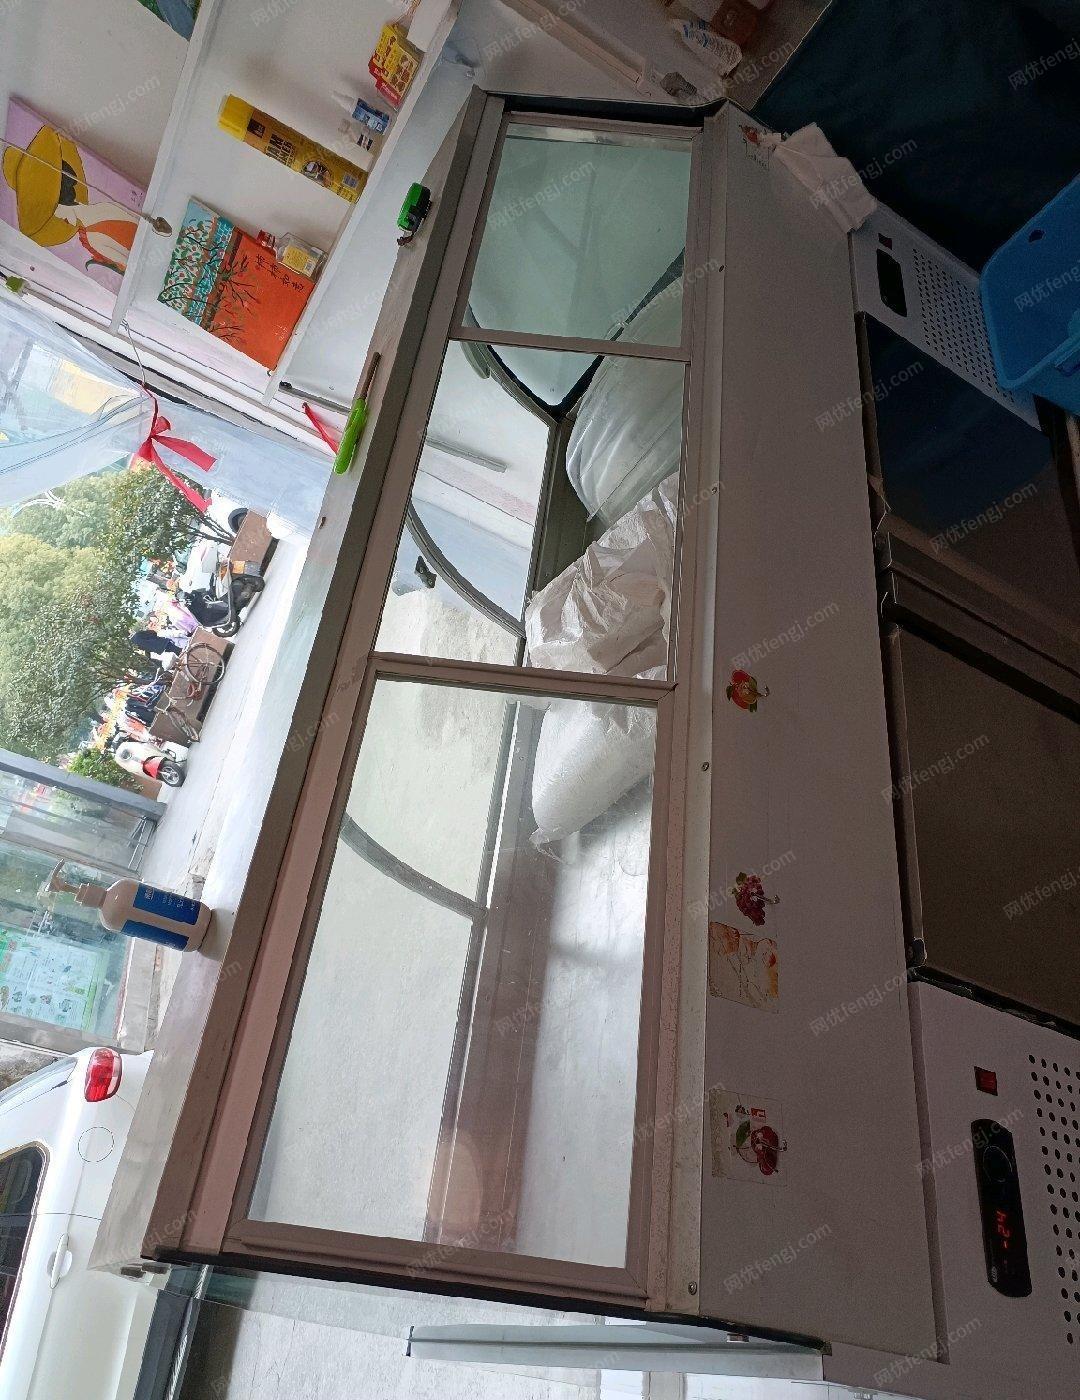 湖北十堰出售卤菜店厨具及奶茶设备 冰淇淋机